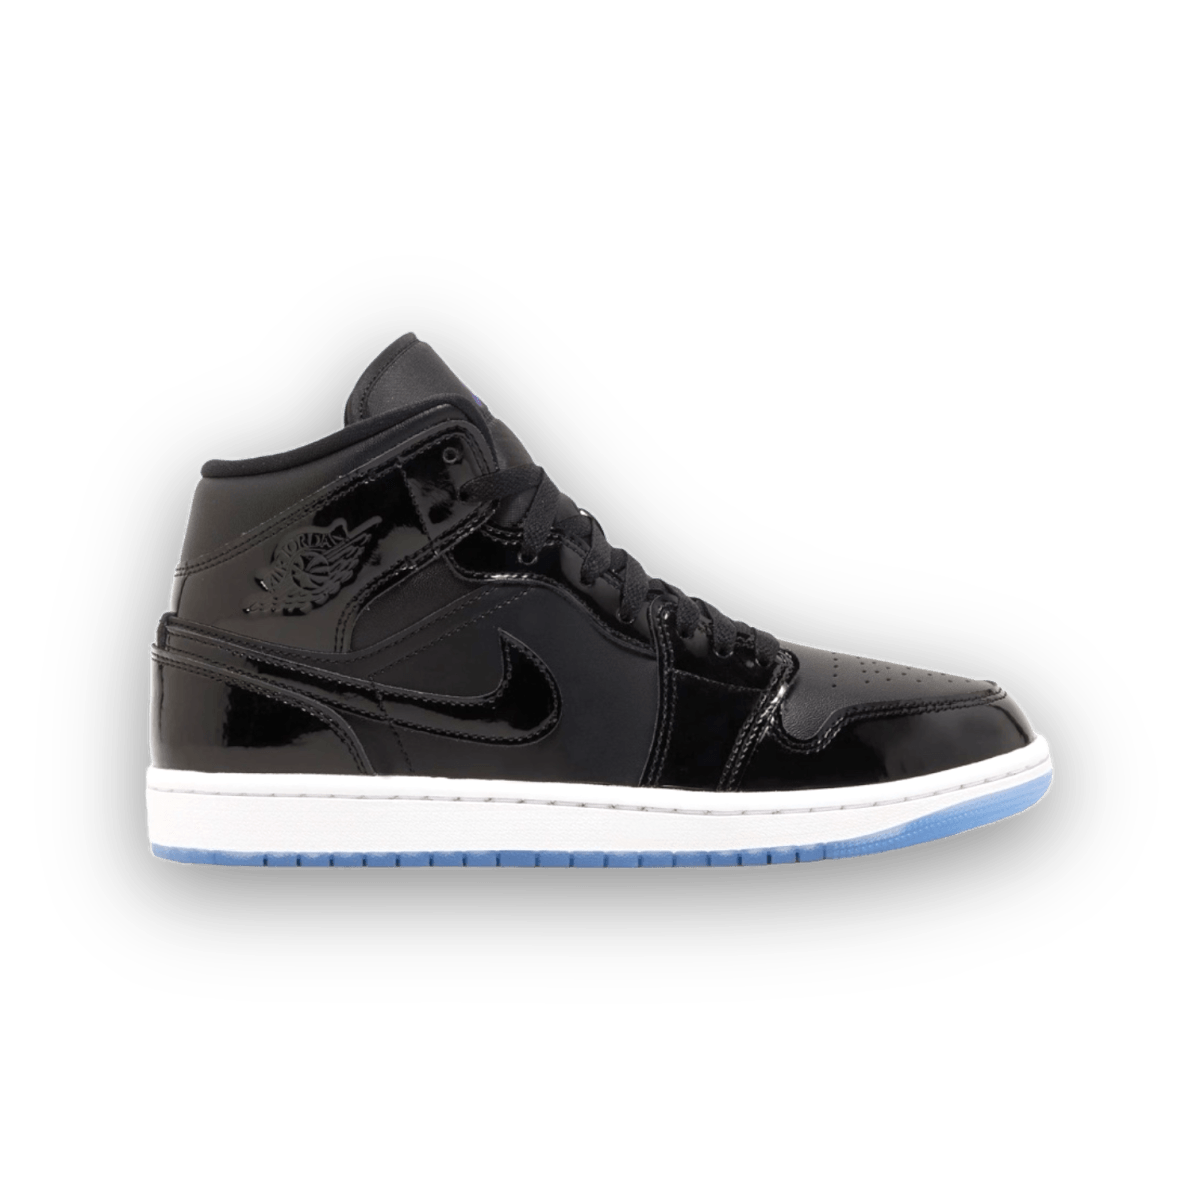 Jordan 1 Mid Space Jam - High Sneaker - Jordan - Jawns on Fire - sneakers